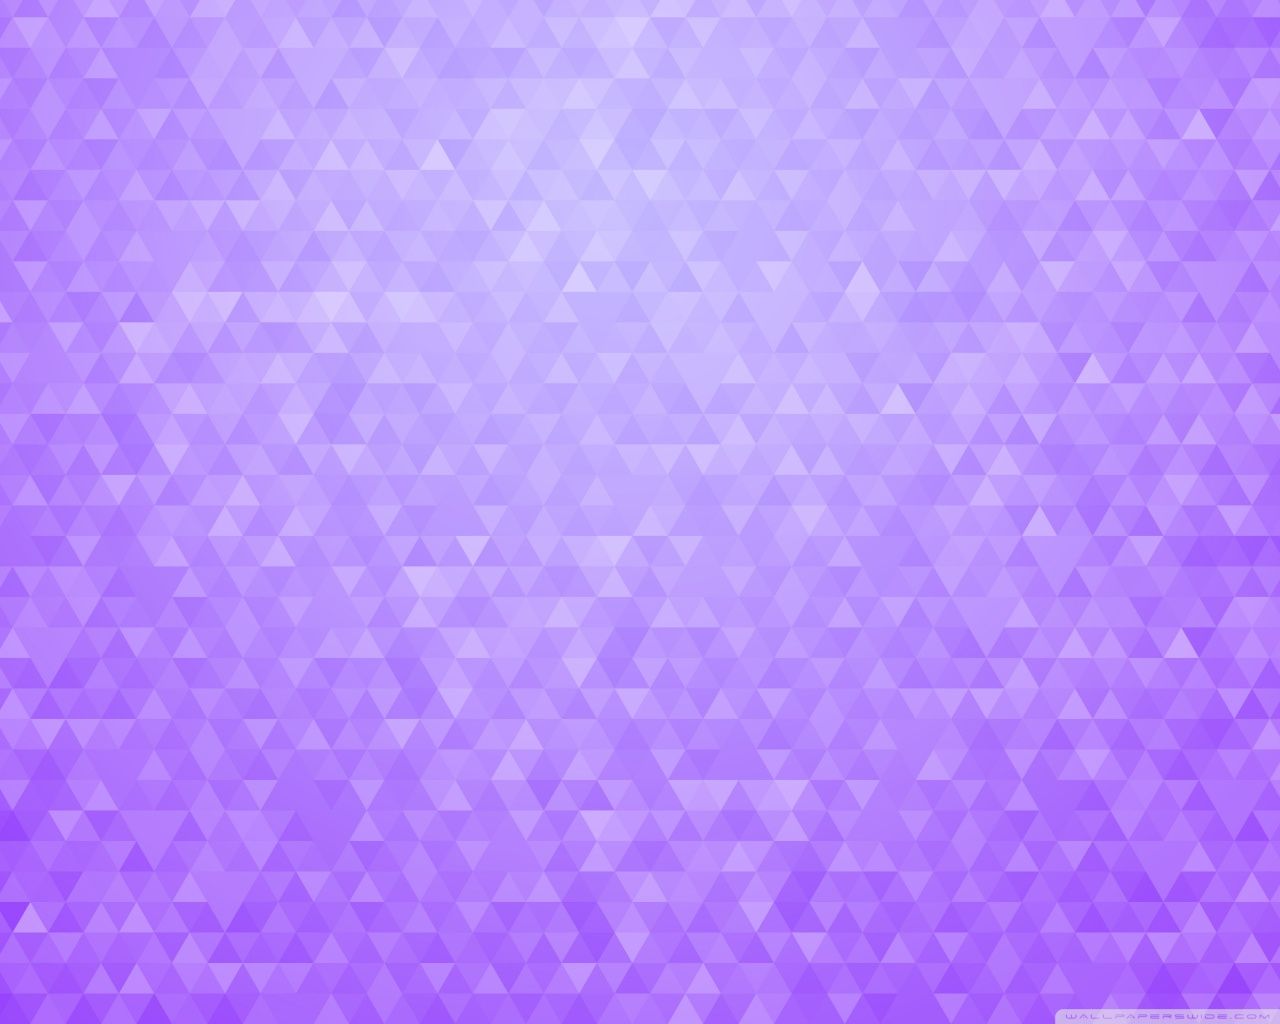 Gradient Textures Nexus 5 Wallpaper. My Sims 3 Downloads